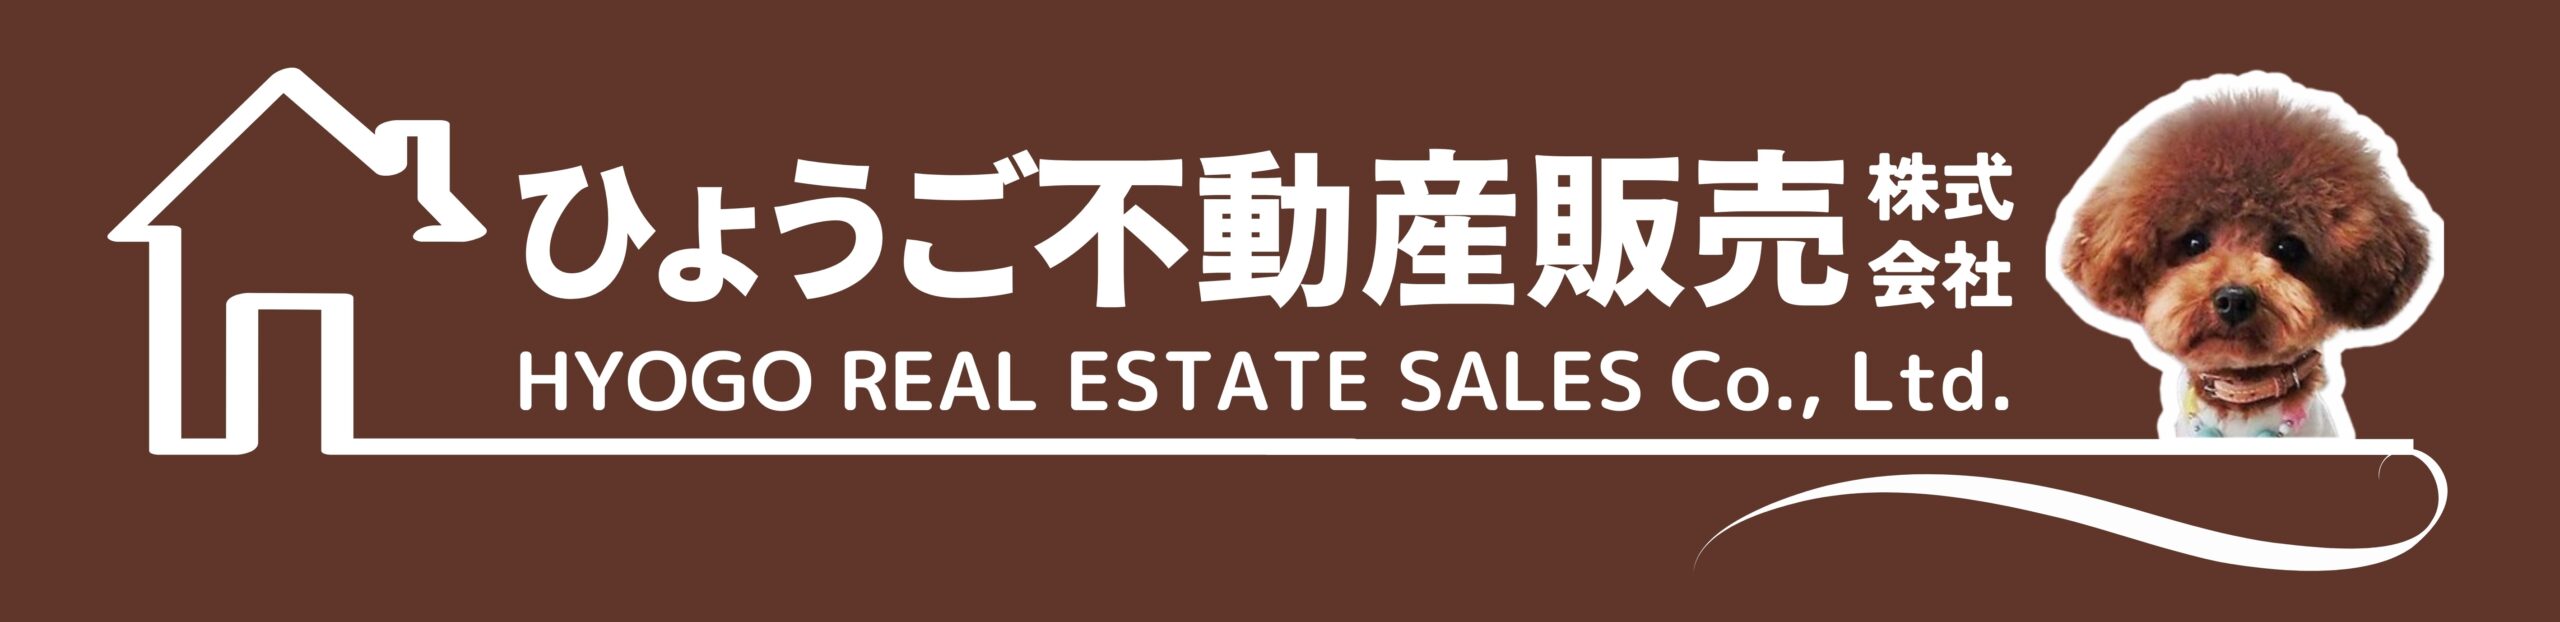 ひょうご不動産販売株式会社 – HYOGO REAL ESTATE SALES Co.,Ltd.